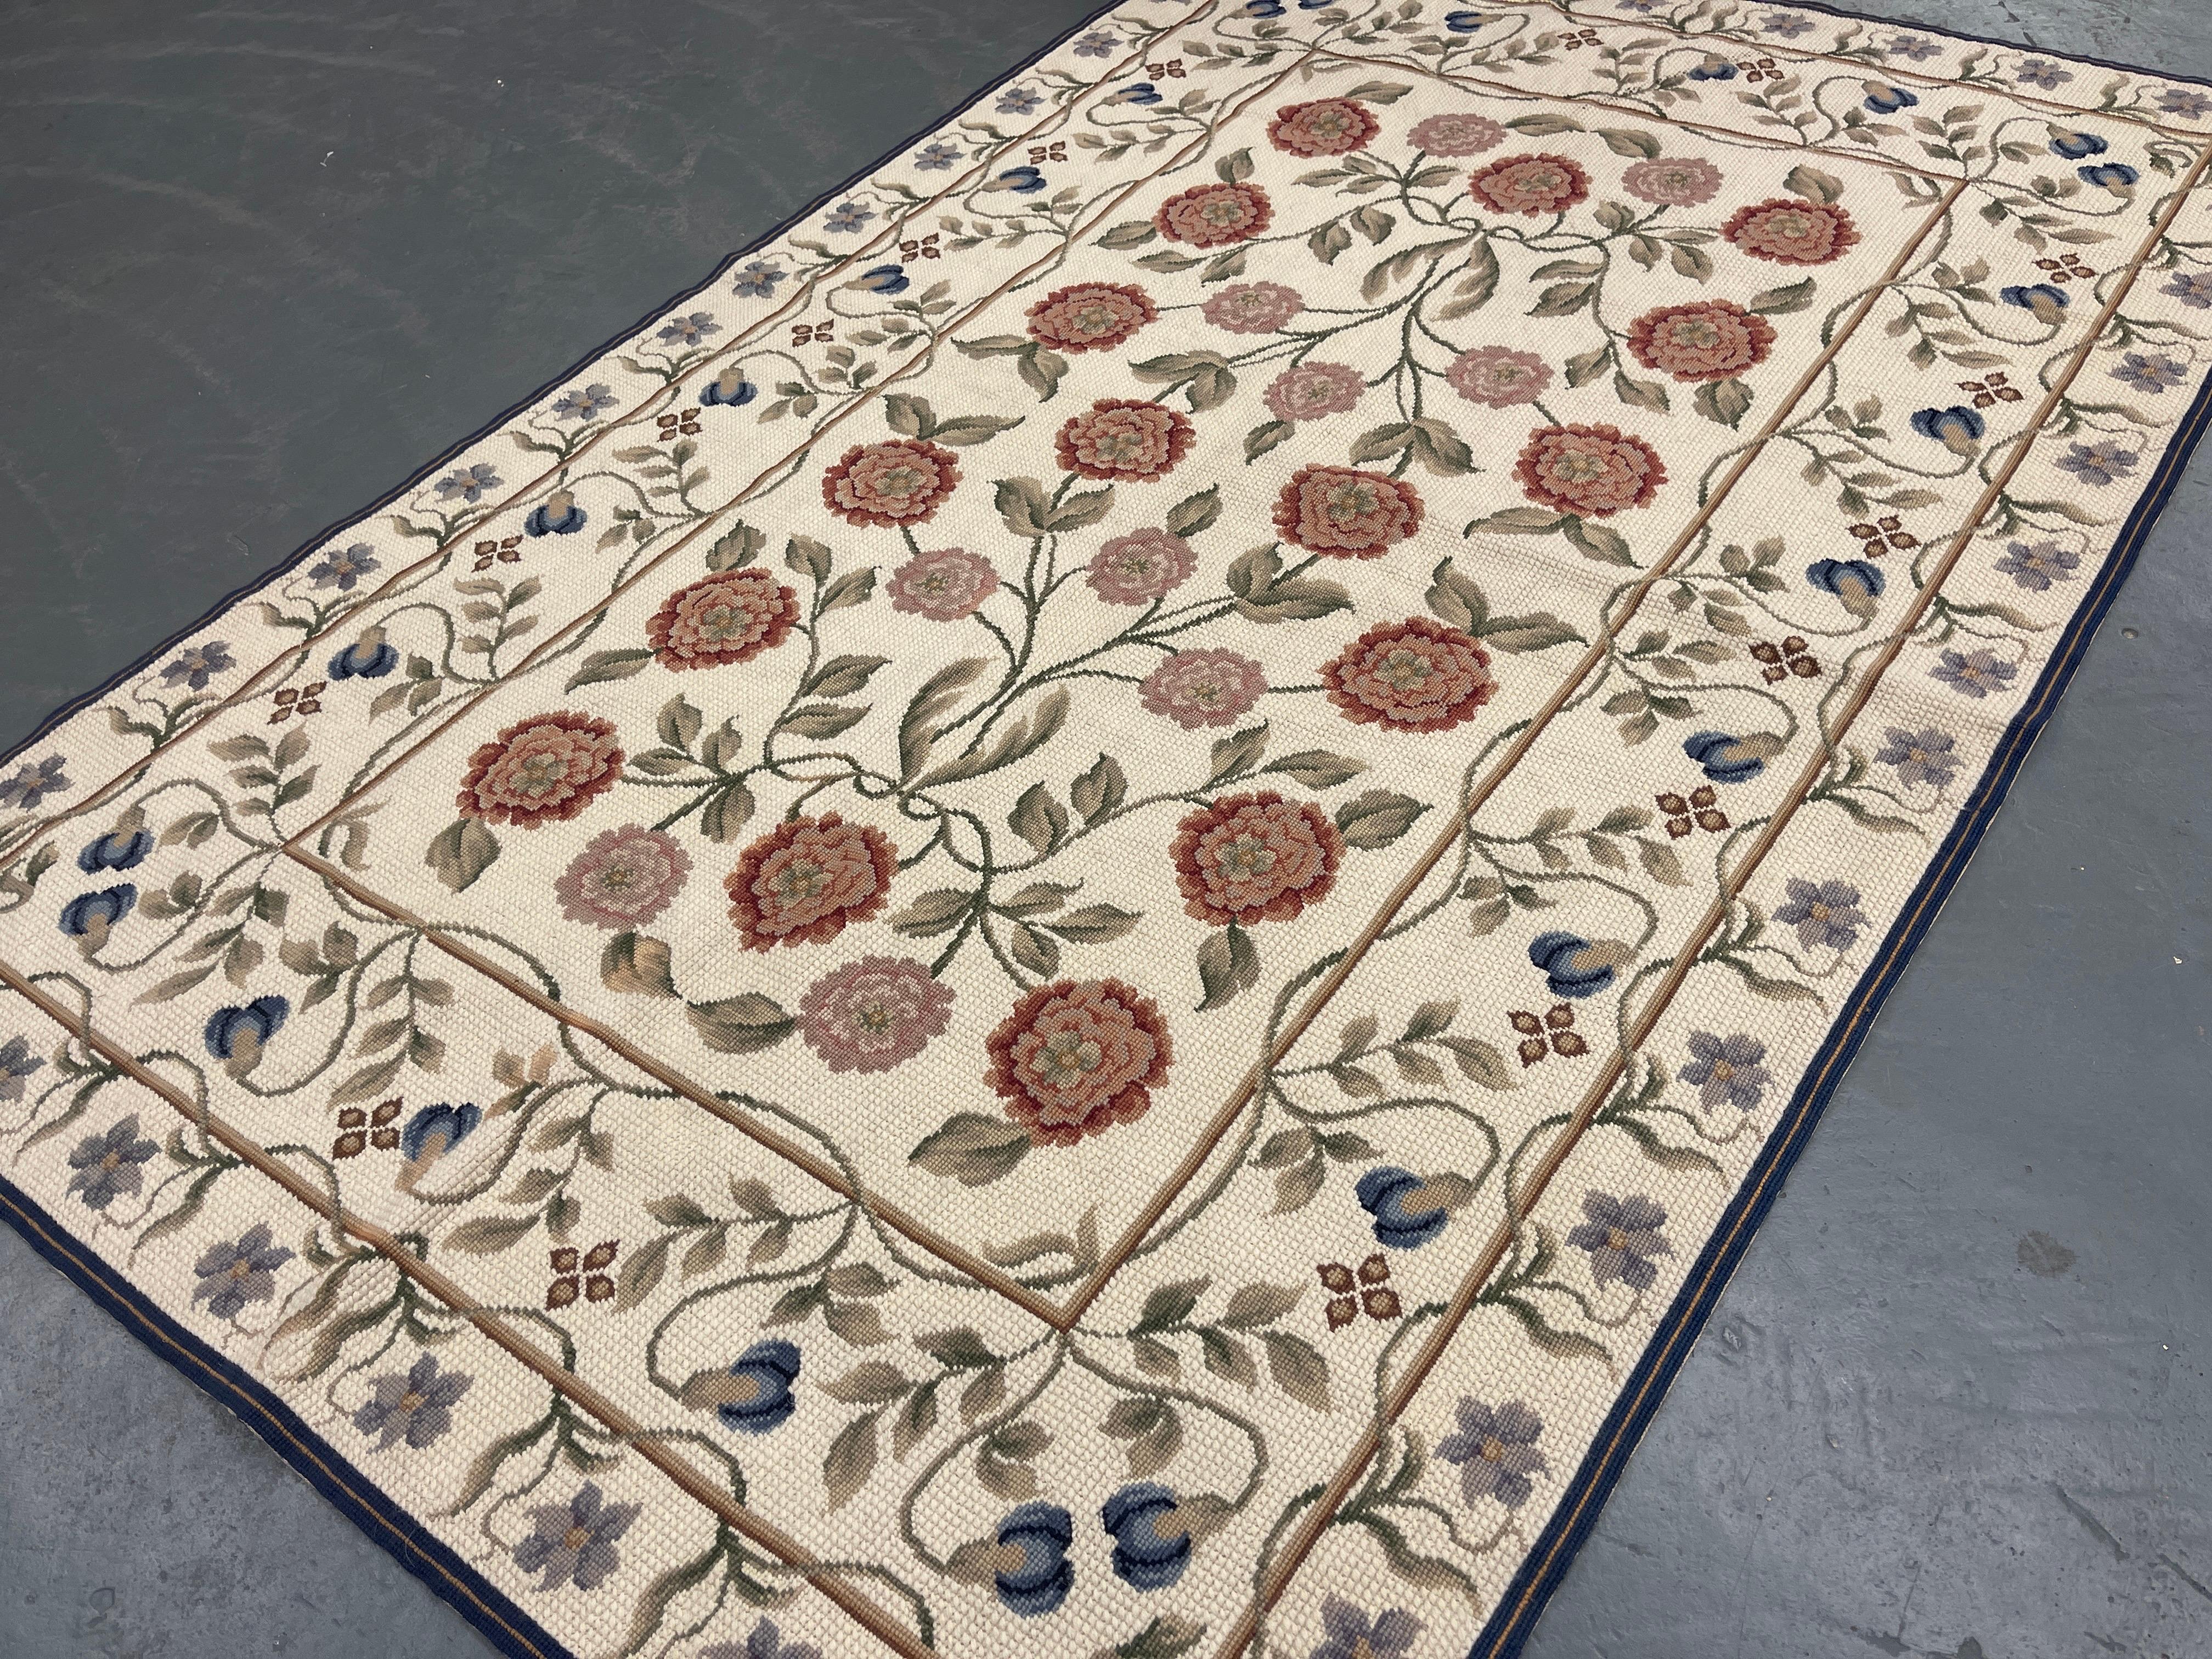 Dieser fantastische florale Teppich wurde von Hand gewebt und zeigt ein wunderschönes florales Allover-Muster auf einem creme-elfenbeinfarbenen Hintergrund mit creme-grünen und rosa Akzenten. Die Farbe und das Design dieses eleganten Stücks machen